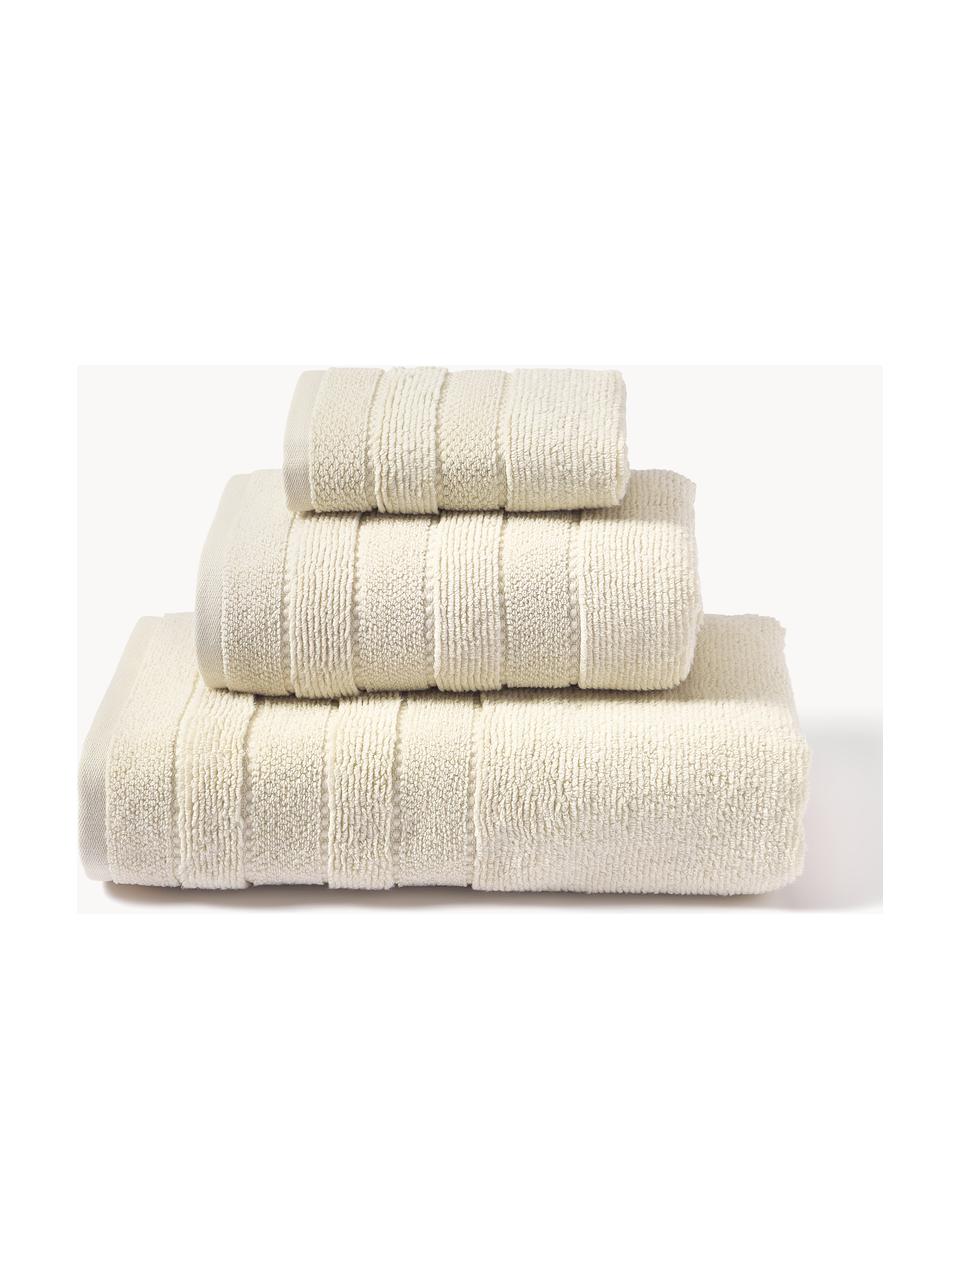 Súprava uterákov s pruhovaným okrajom Luxe, 3 diely, Lomená biela, 3-dielna súprava (uterák pre hostí, uterák na ruky, osuška)